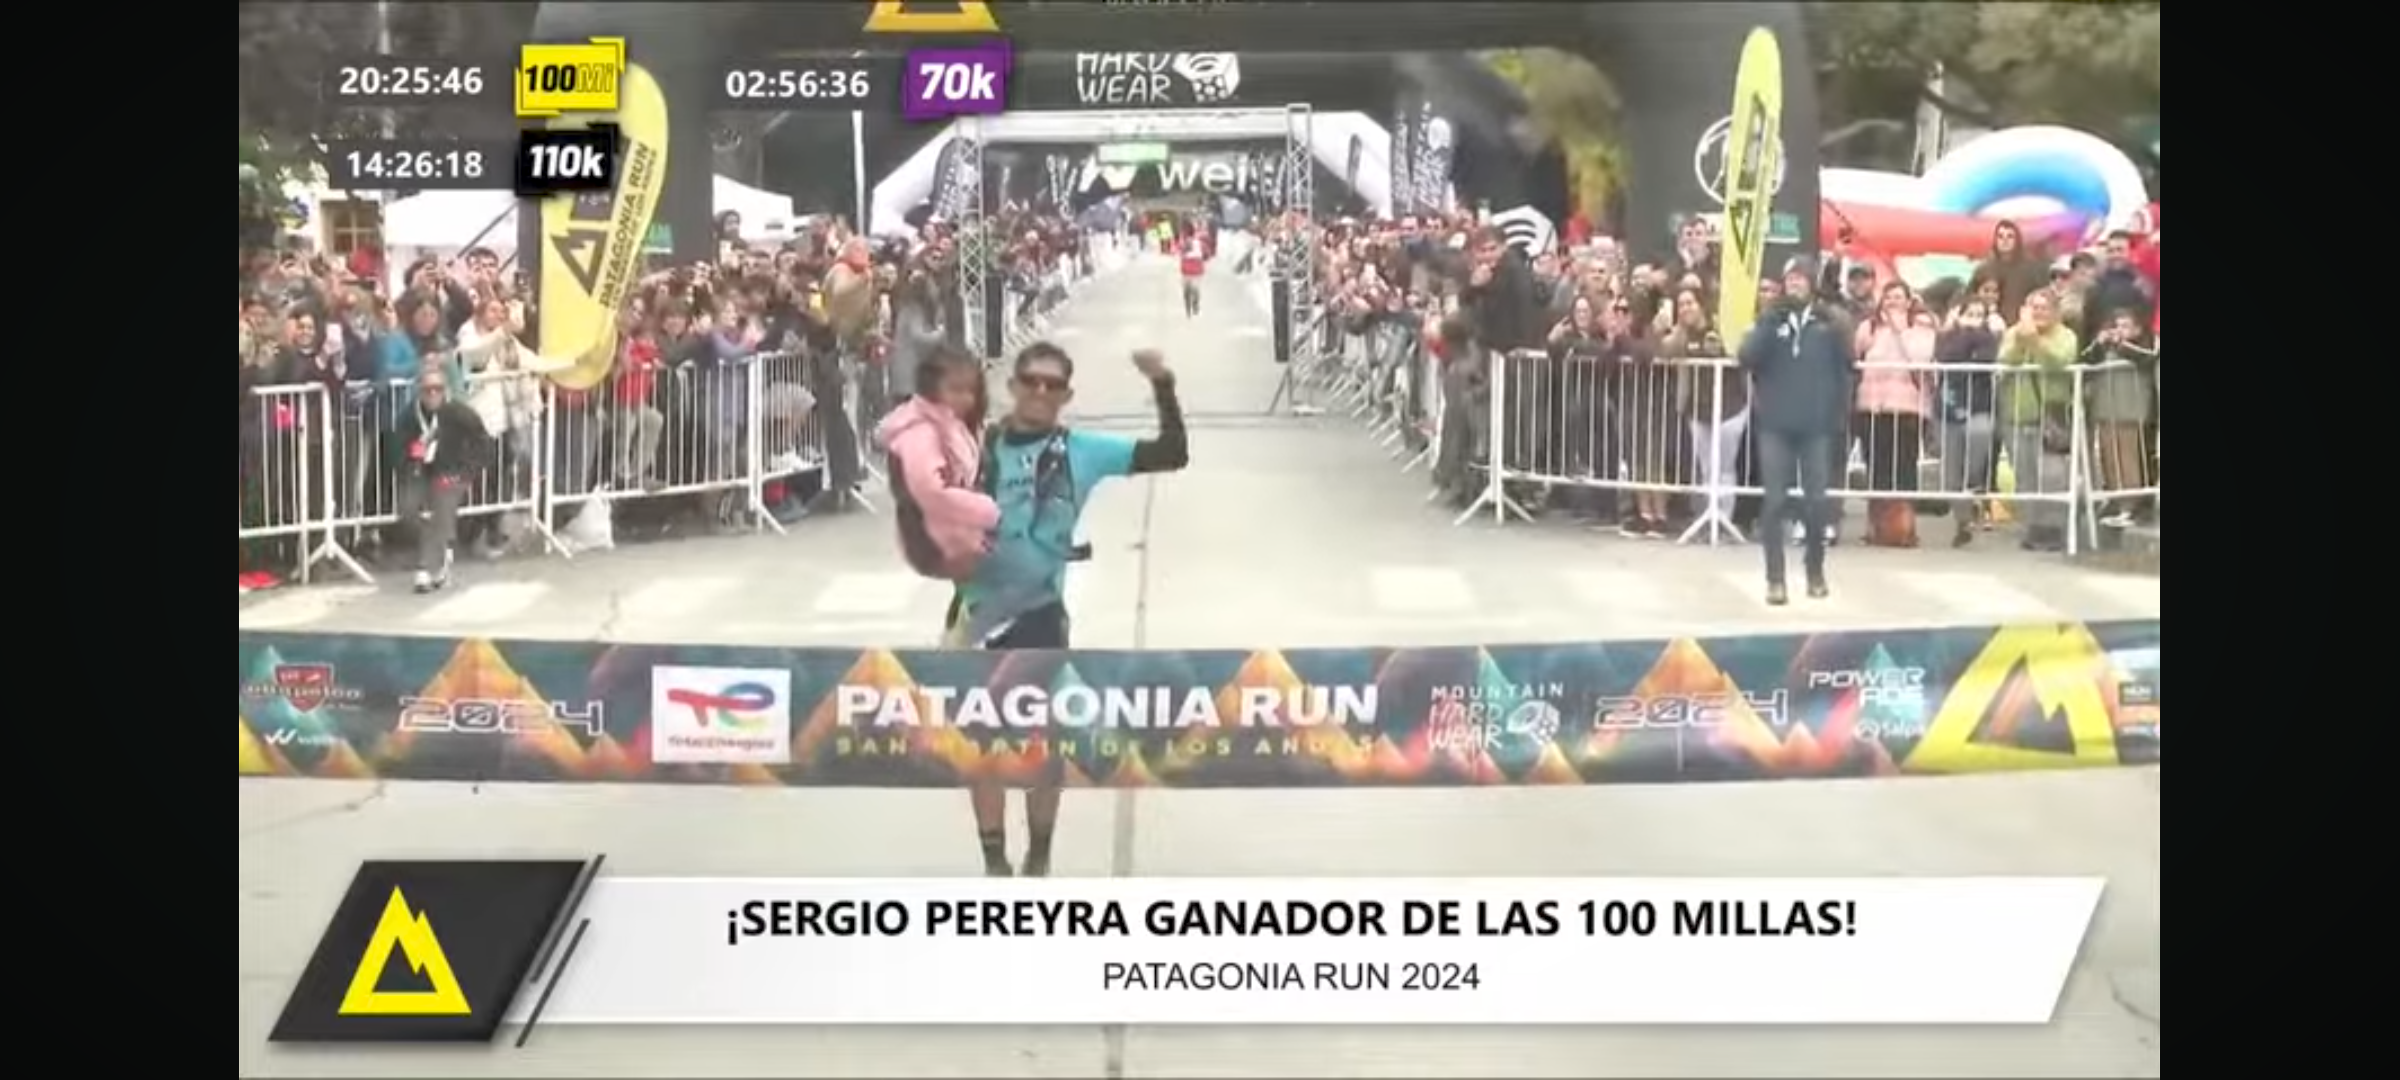 Patagonia Run: Sergio Pereyra gana las 100 millas